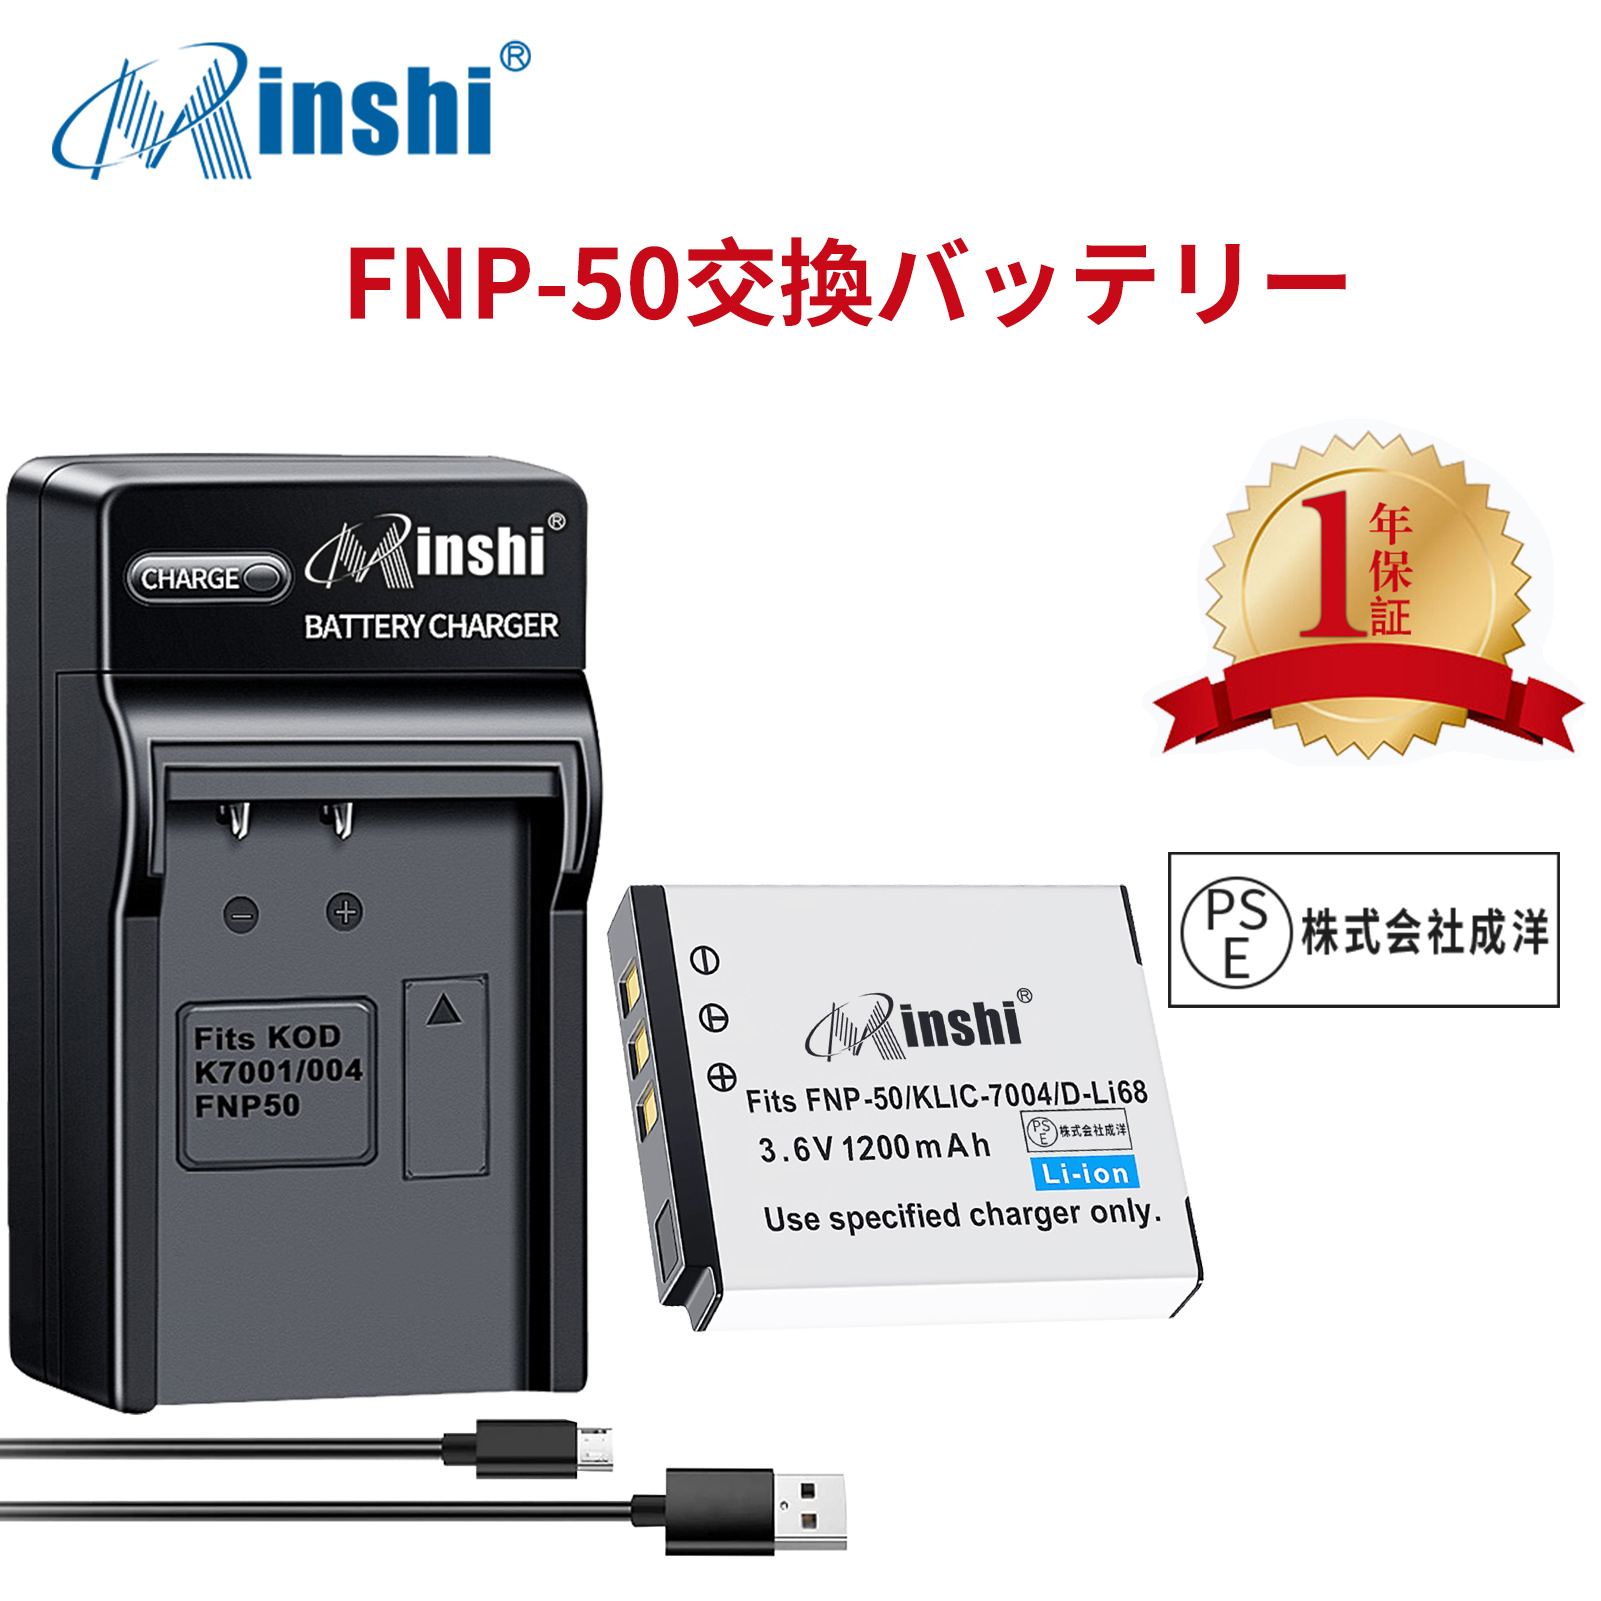 【1年保証】minshi PENTAX Q10 【1200mAh 3.6V】【互換急速USBチャージャー】PSE認定済 高品質 D-LI122 PENTAX D-LI68 交換用バッテリー